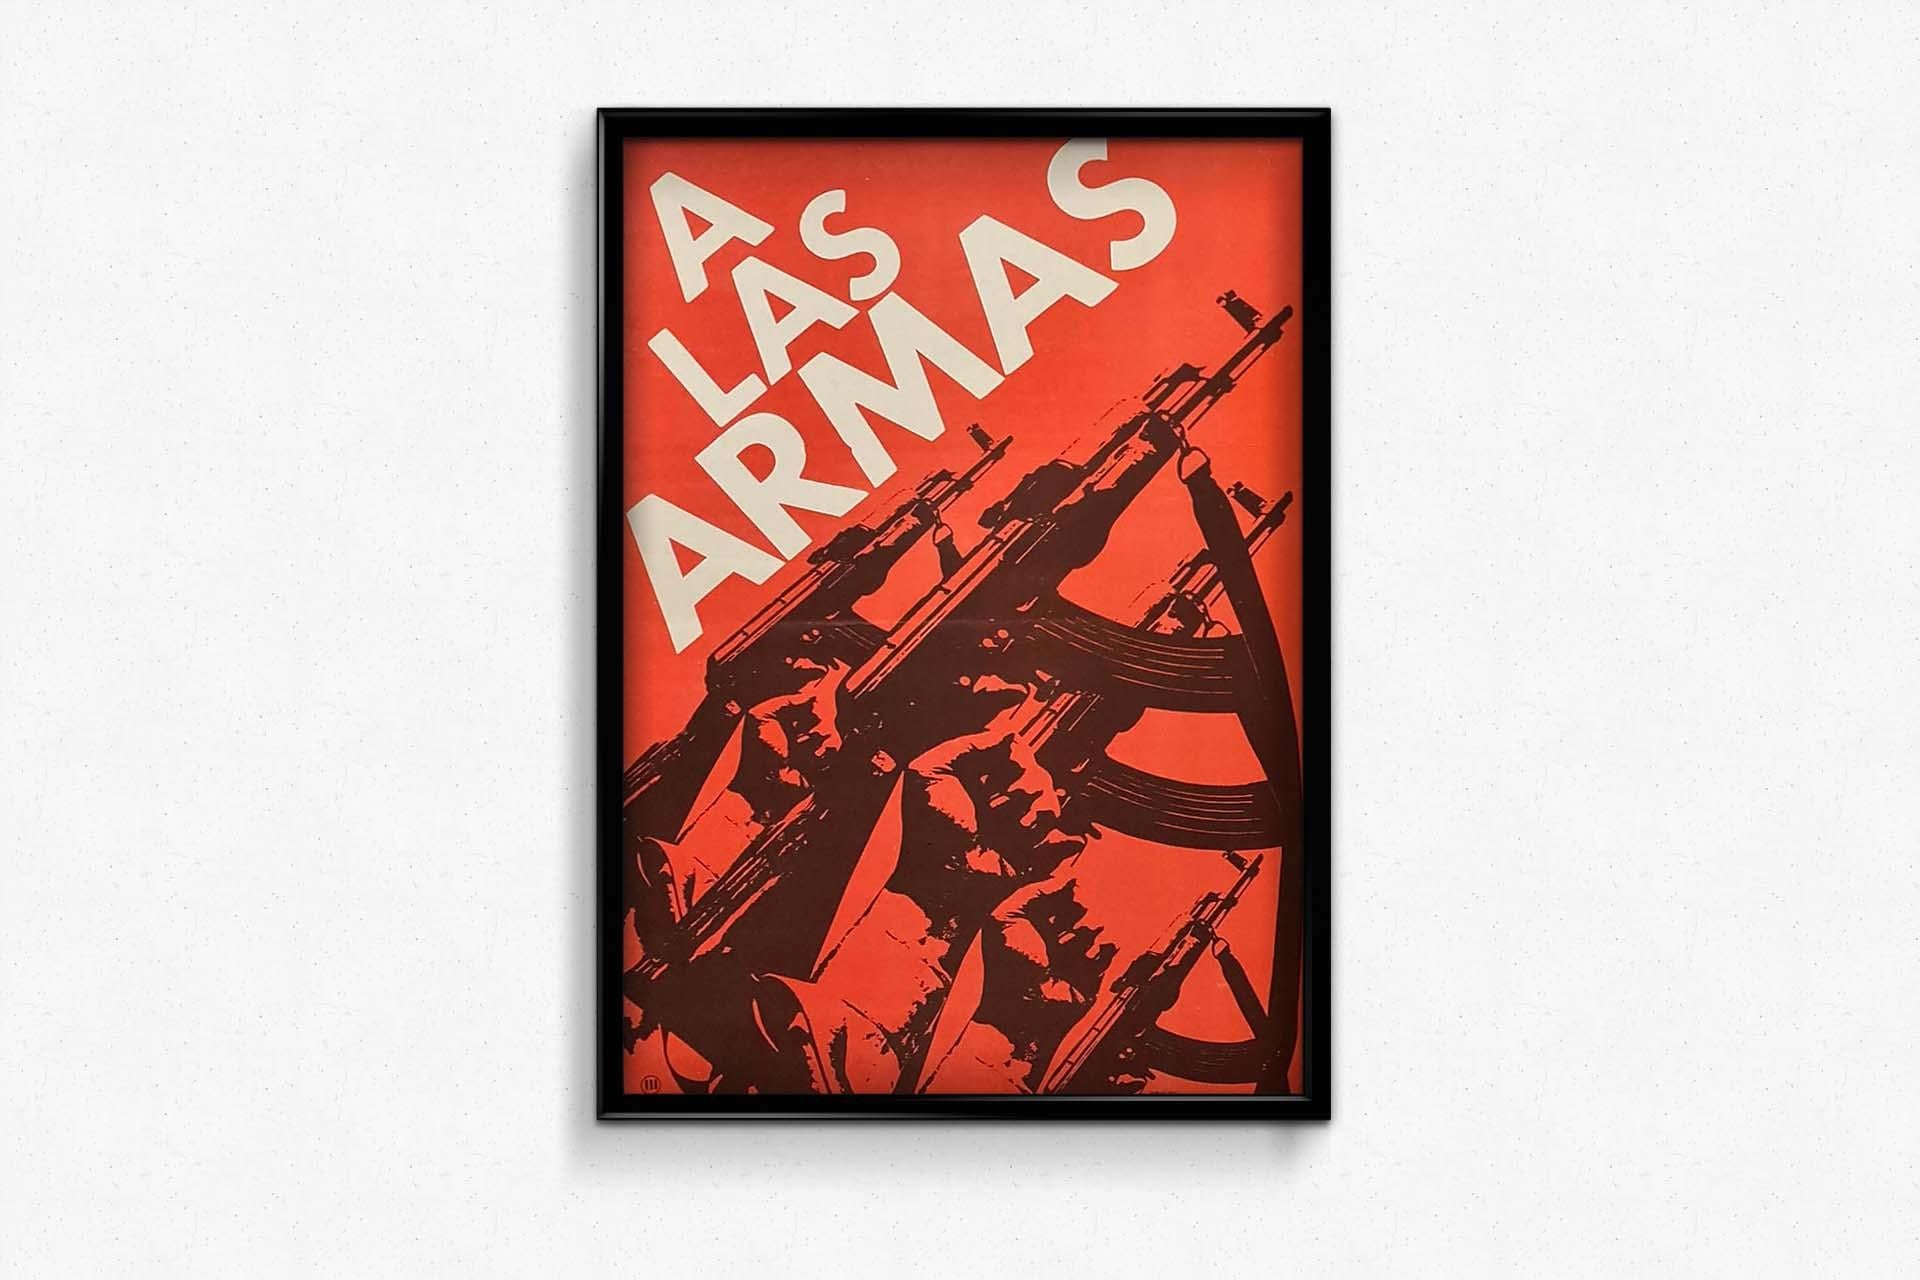 cuban propaganda posters